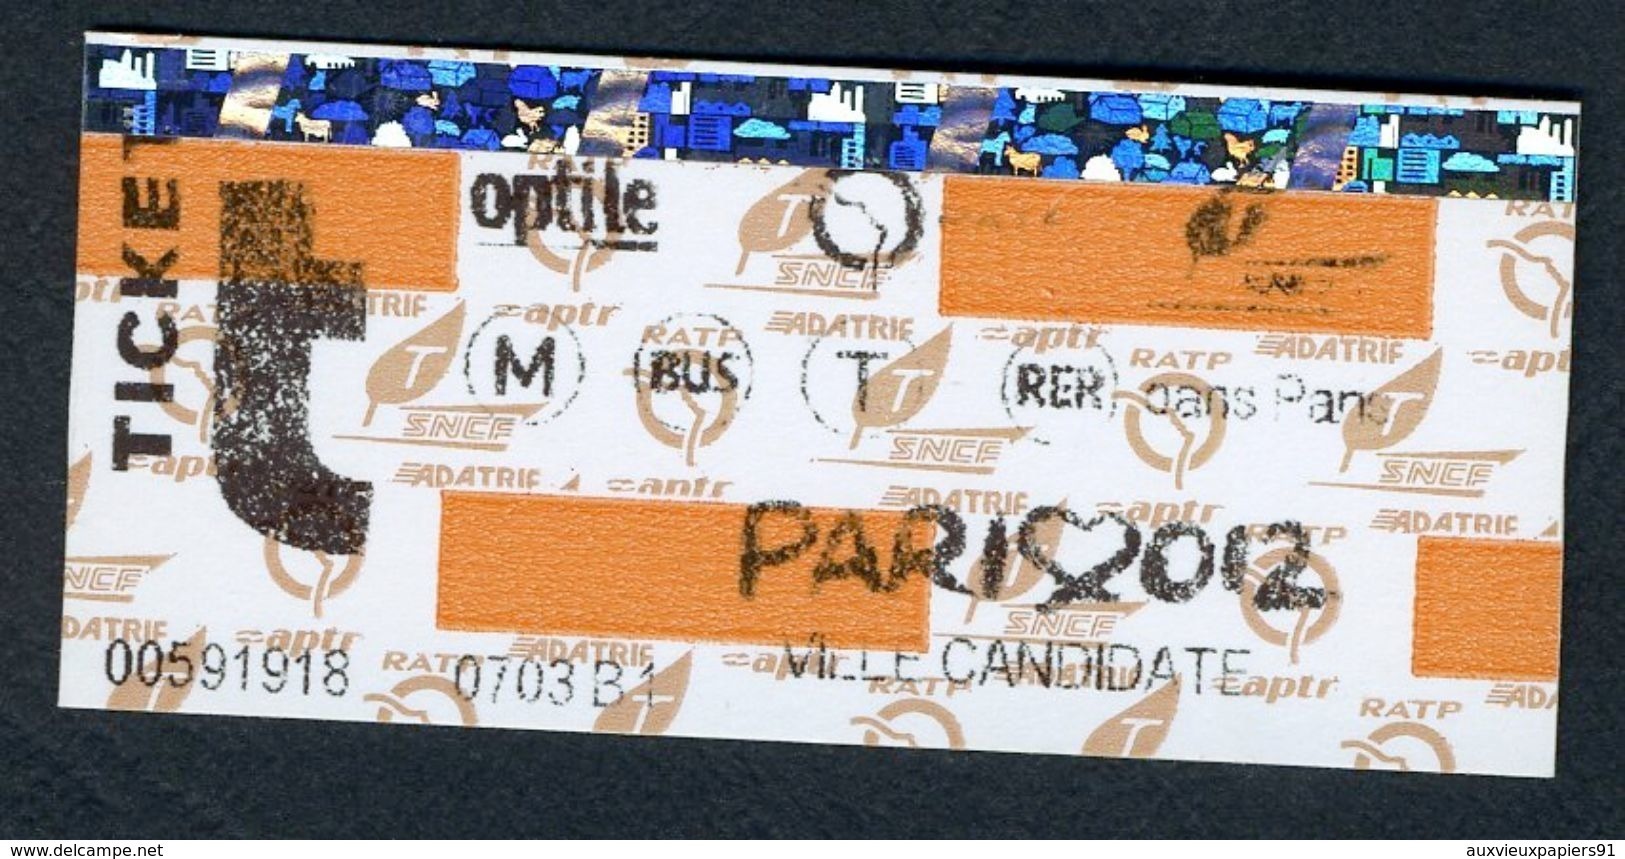 Métro - RATP - Billet Carte Orange Sans Zone (Ticket D'essai D'impression Ou Erreur De Bobineau) - Paris 2012 - RARE - Europe